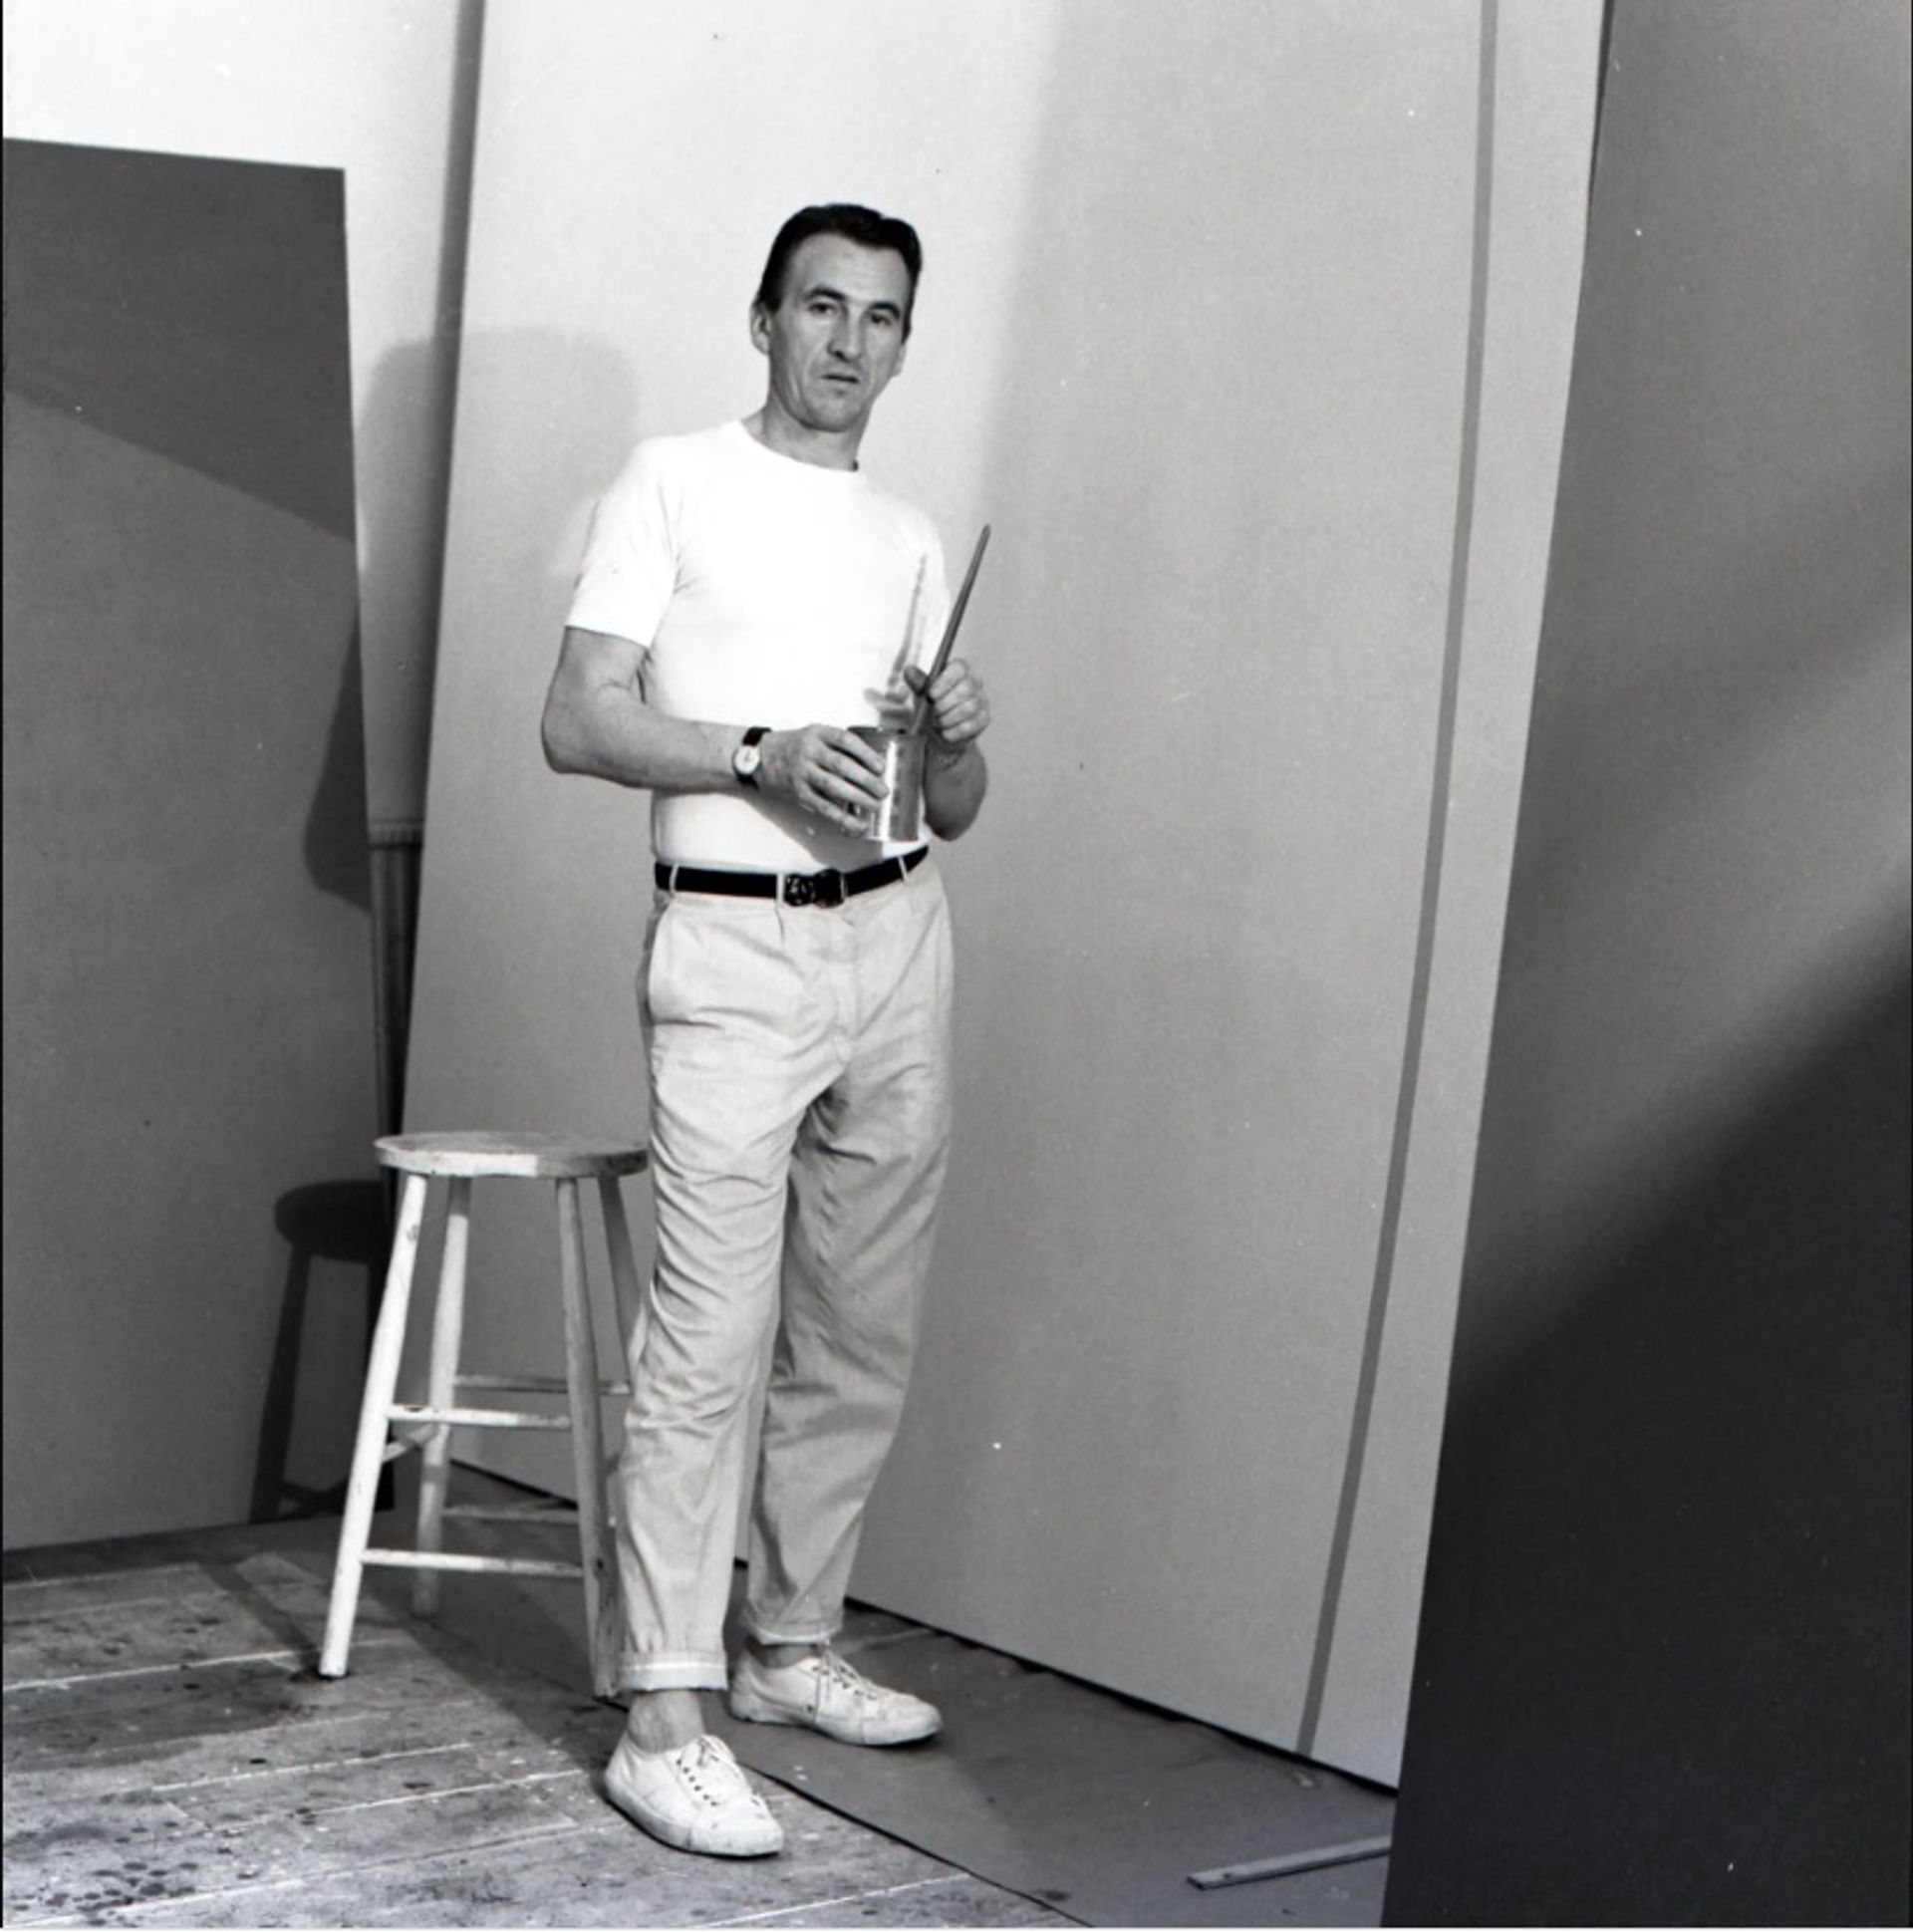 ויליאם טרנבול בסטודיו שלו בקמדן סקוור, 1960

© עזבונו של וויליאם טרנבול